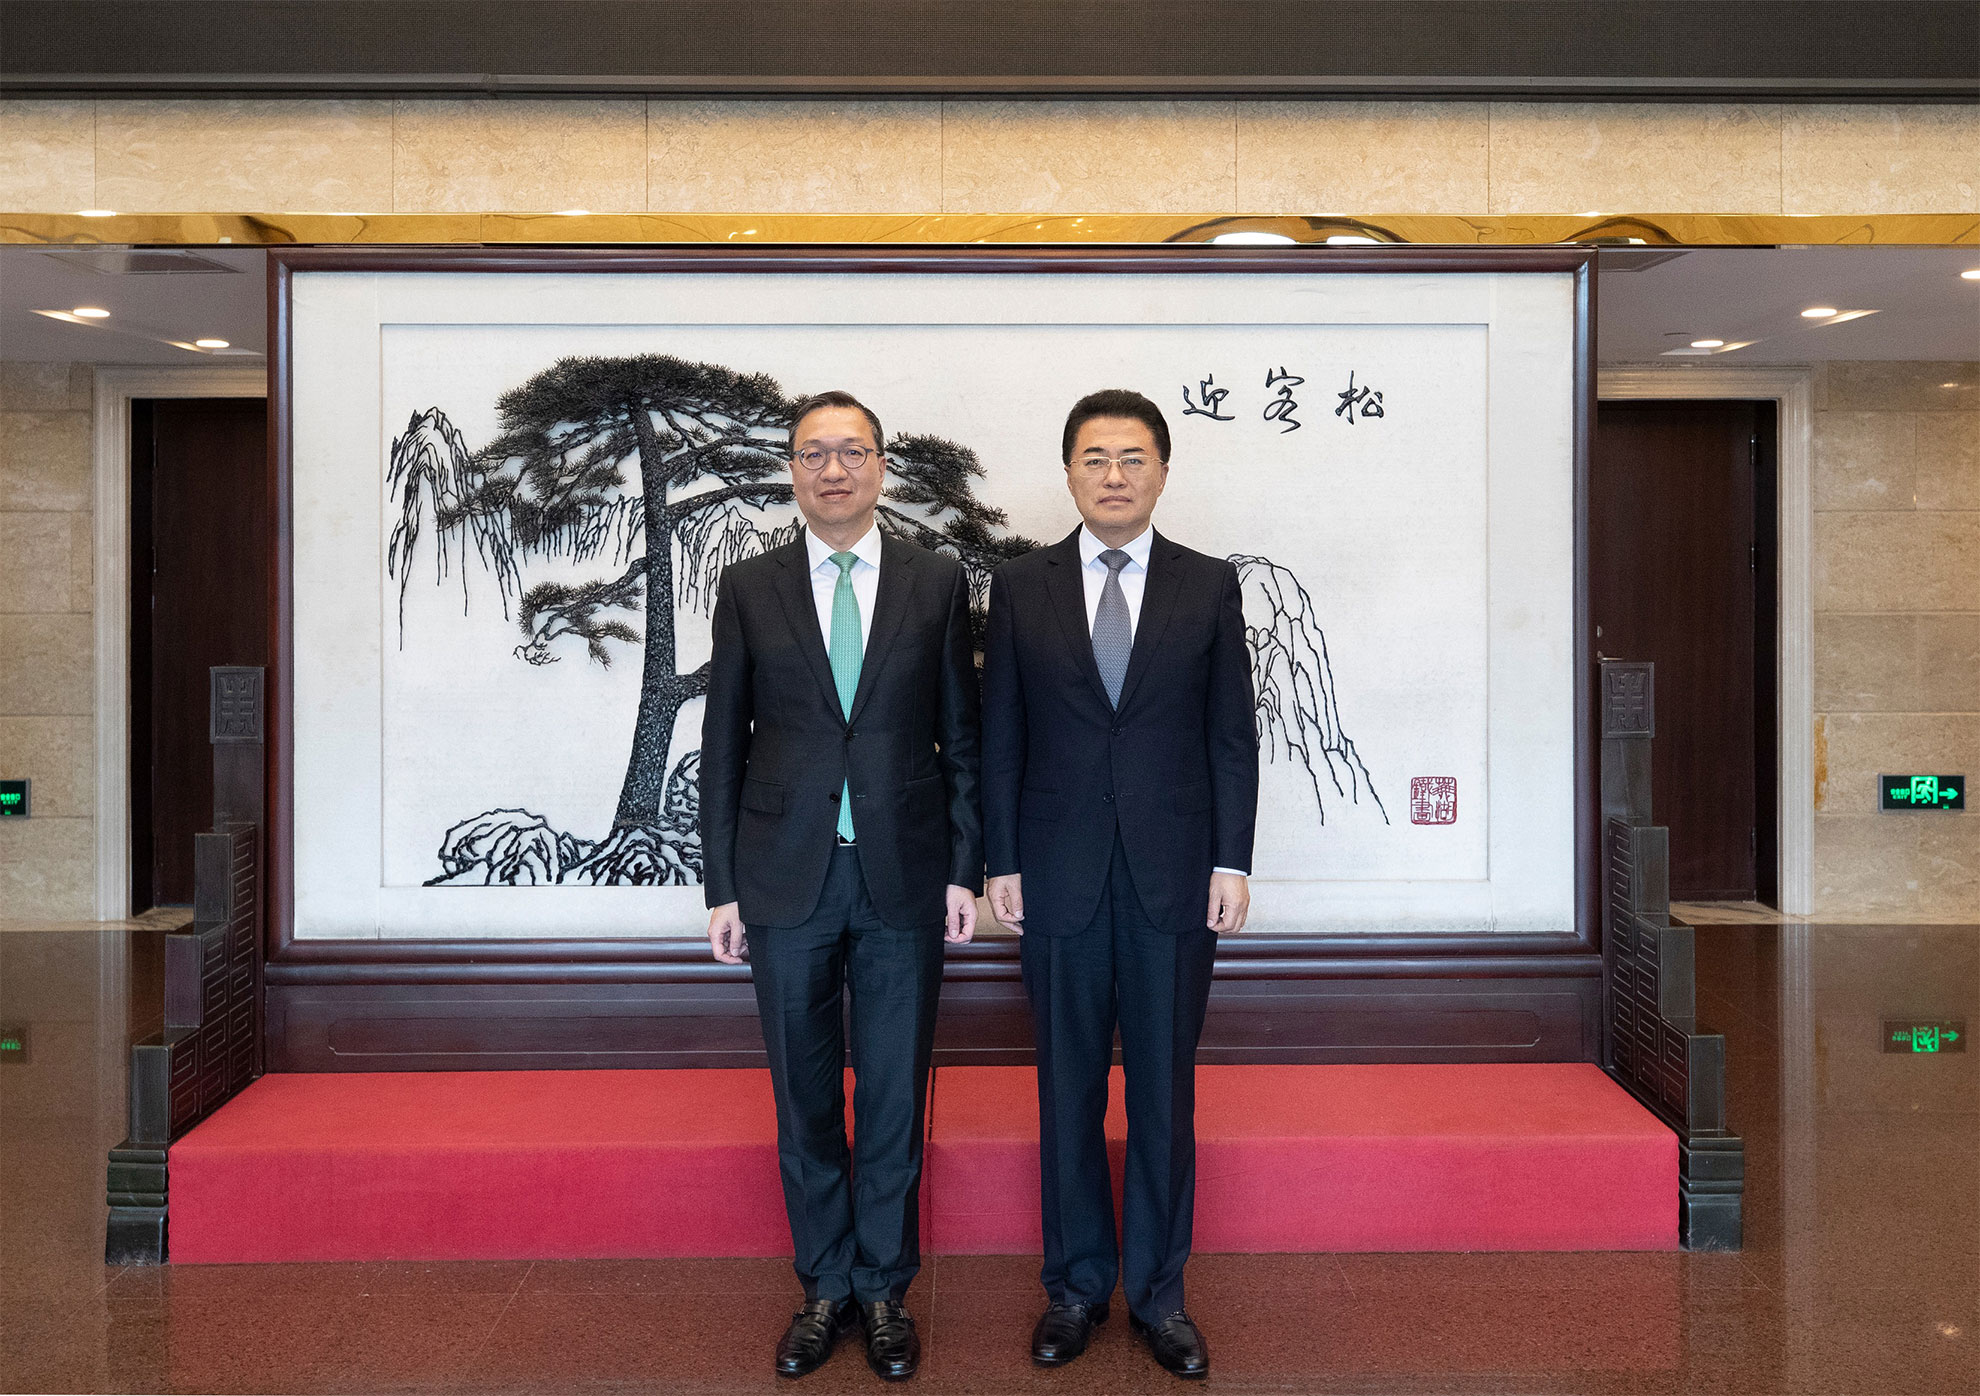 律政司司长林定国资深大律师（左）五月二十九日下午在北京到访国务院国有资产监督管理委员会（国资委），与国资委副主任翁杰明（右）会面。图示二人在会议前合照。